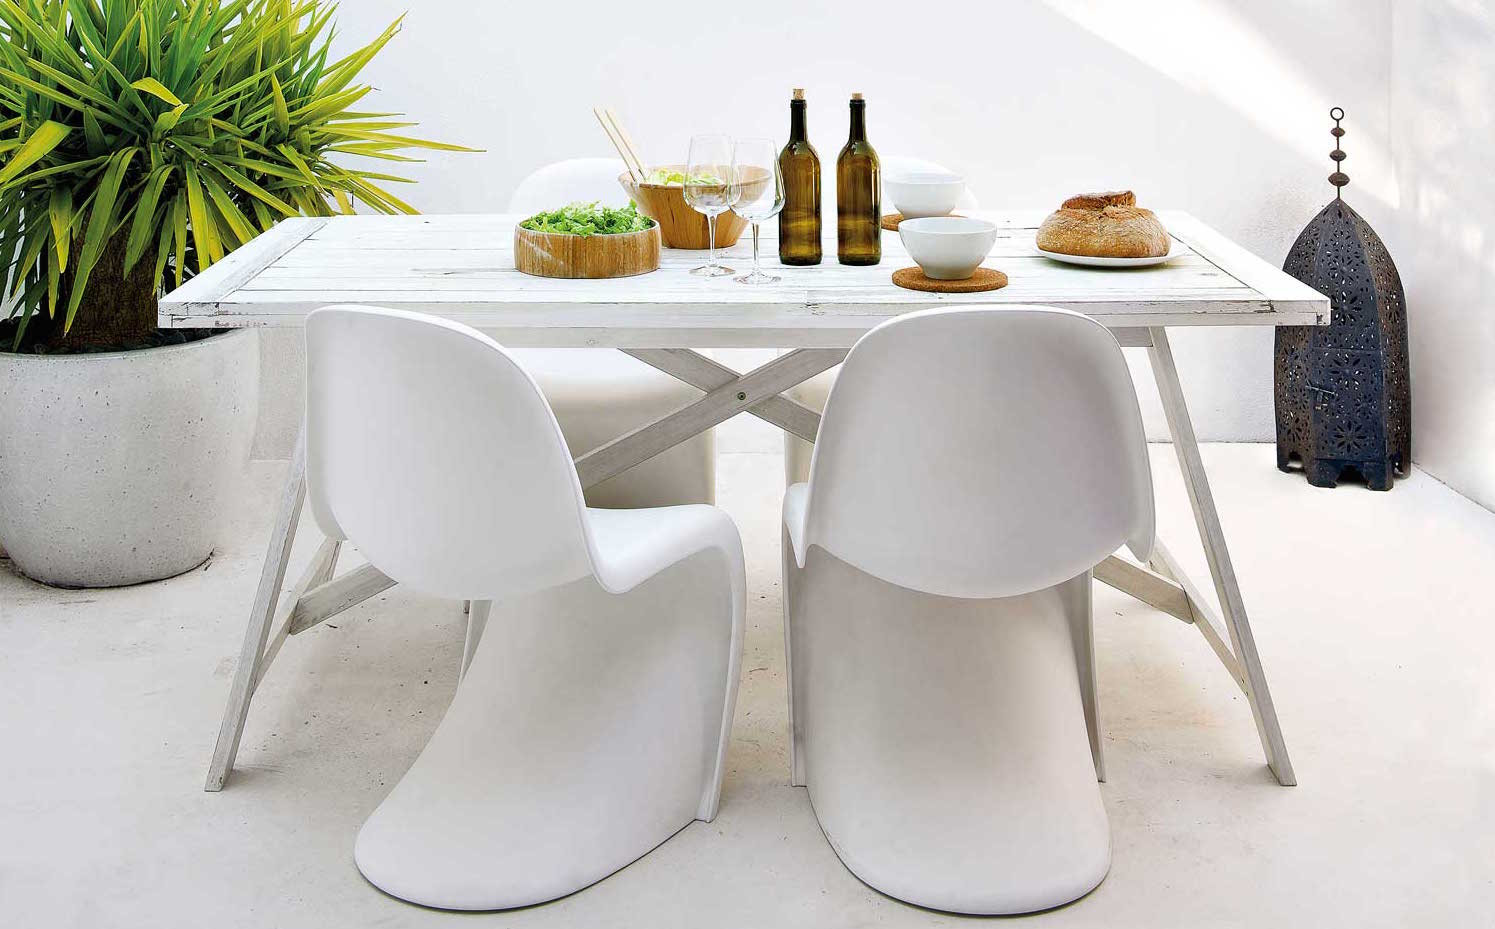 00362960. Una mesa minimalista compuesta por materiales naturales: complementos de madera y vajilla de cerámica blanca